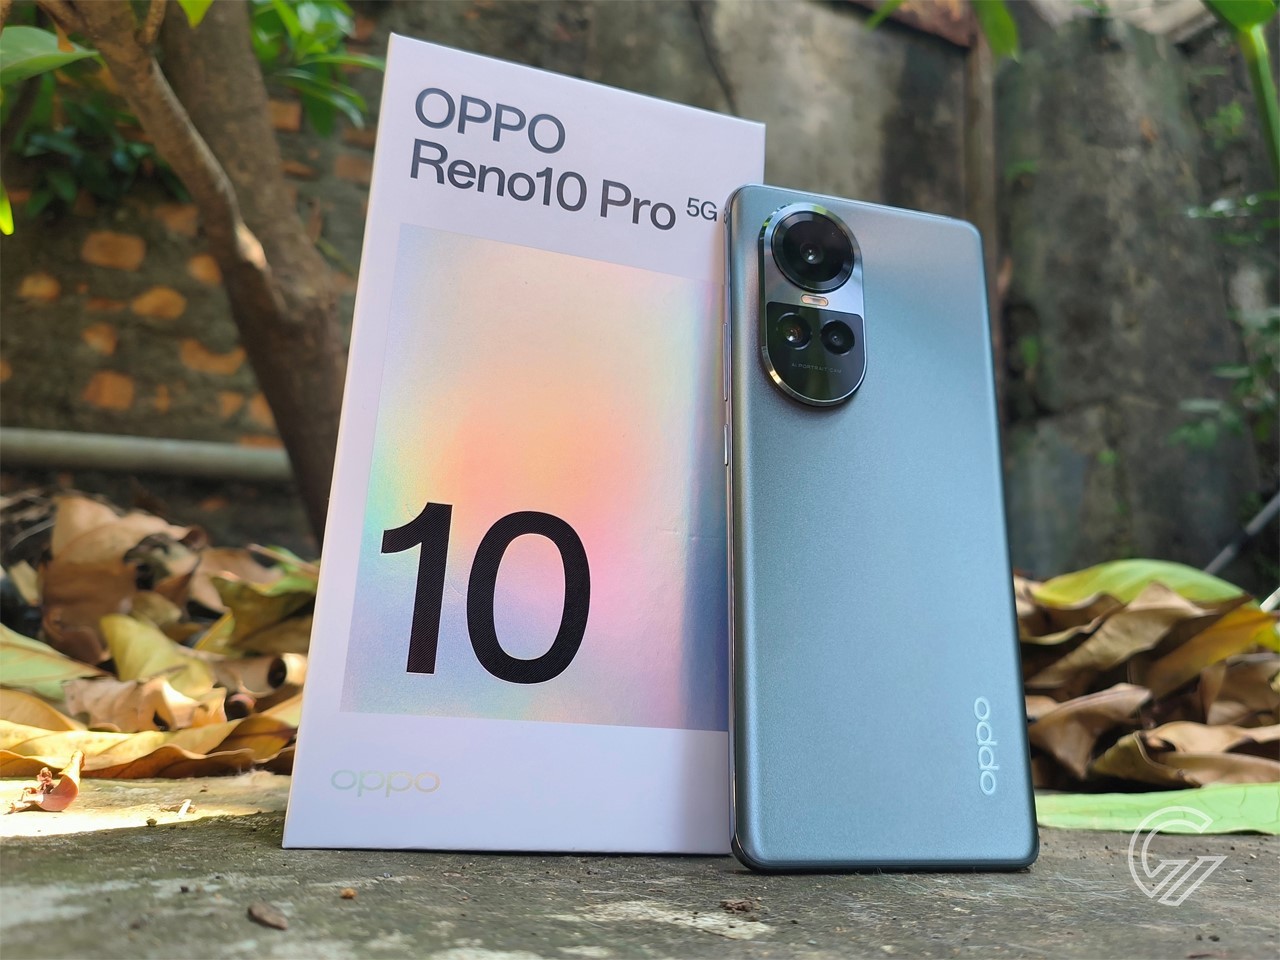 Review OPPO Reno10 Pro 5G – Performa Lancar, Kamera Pintar